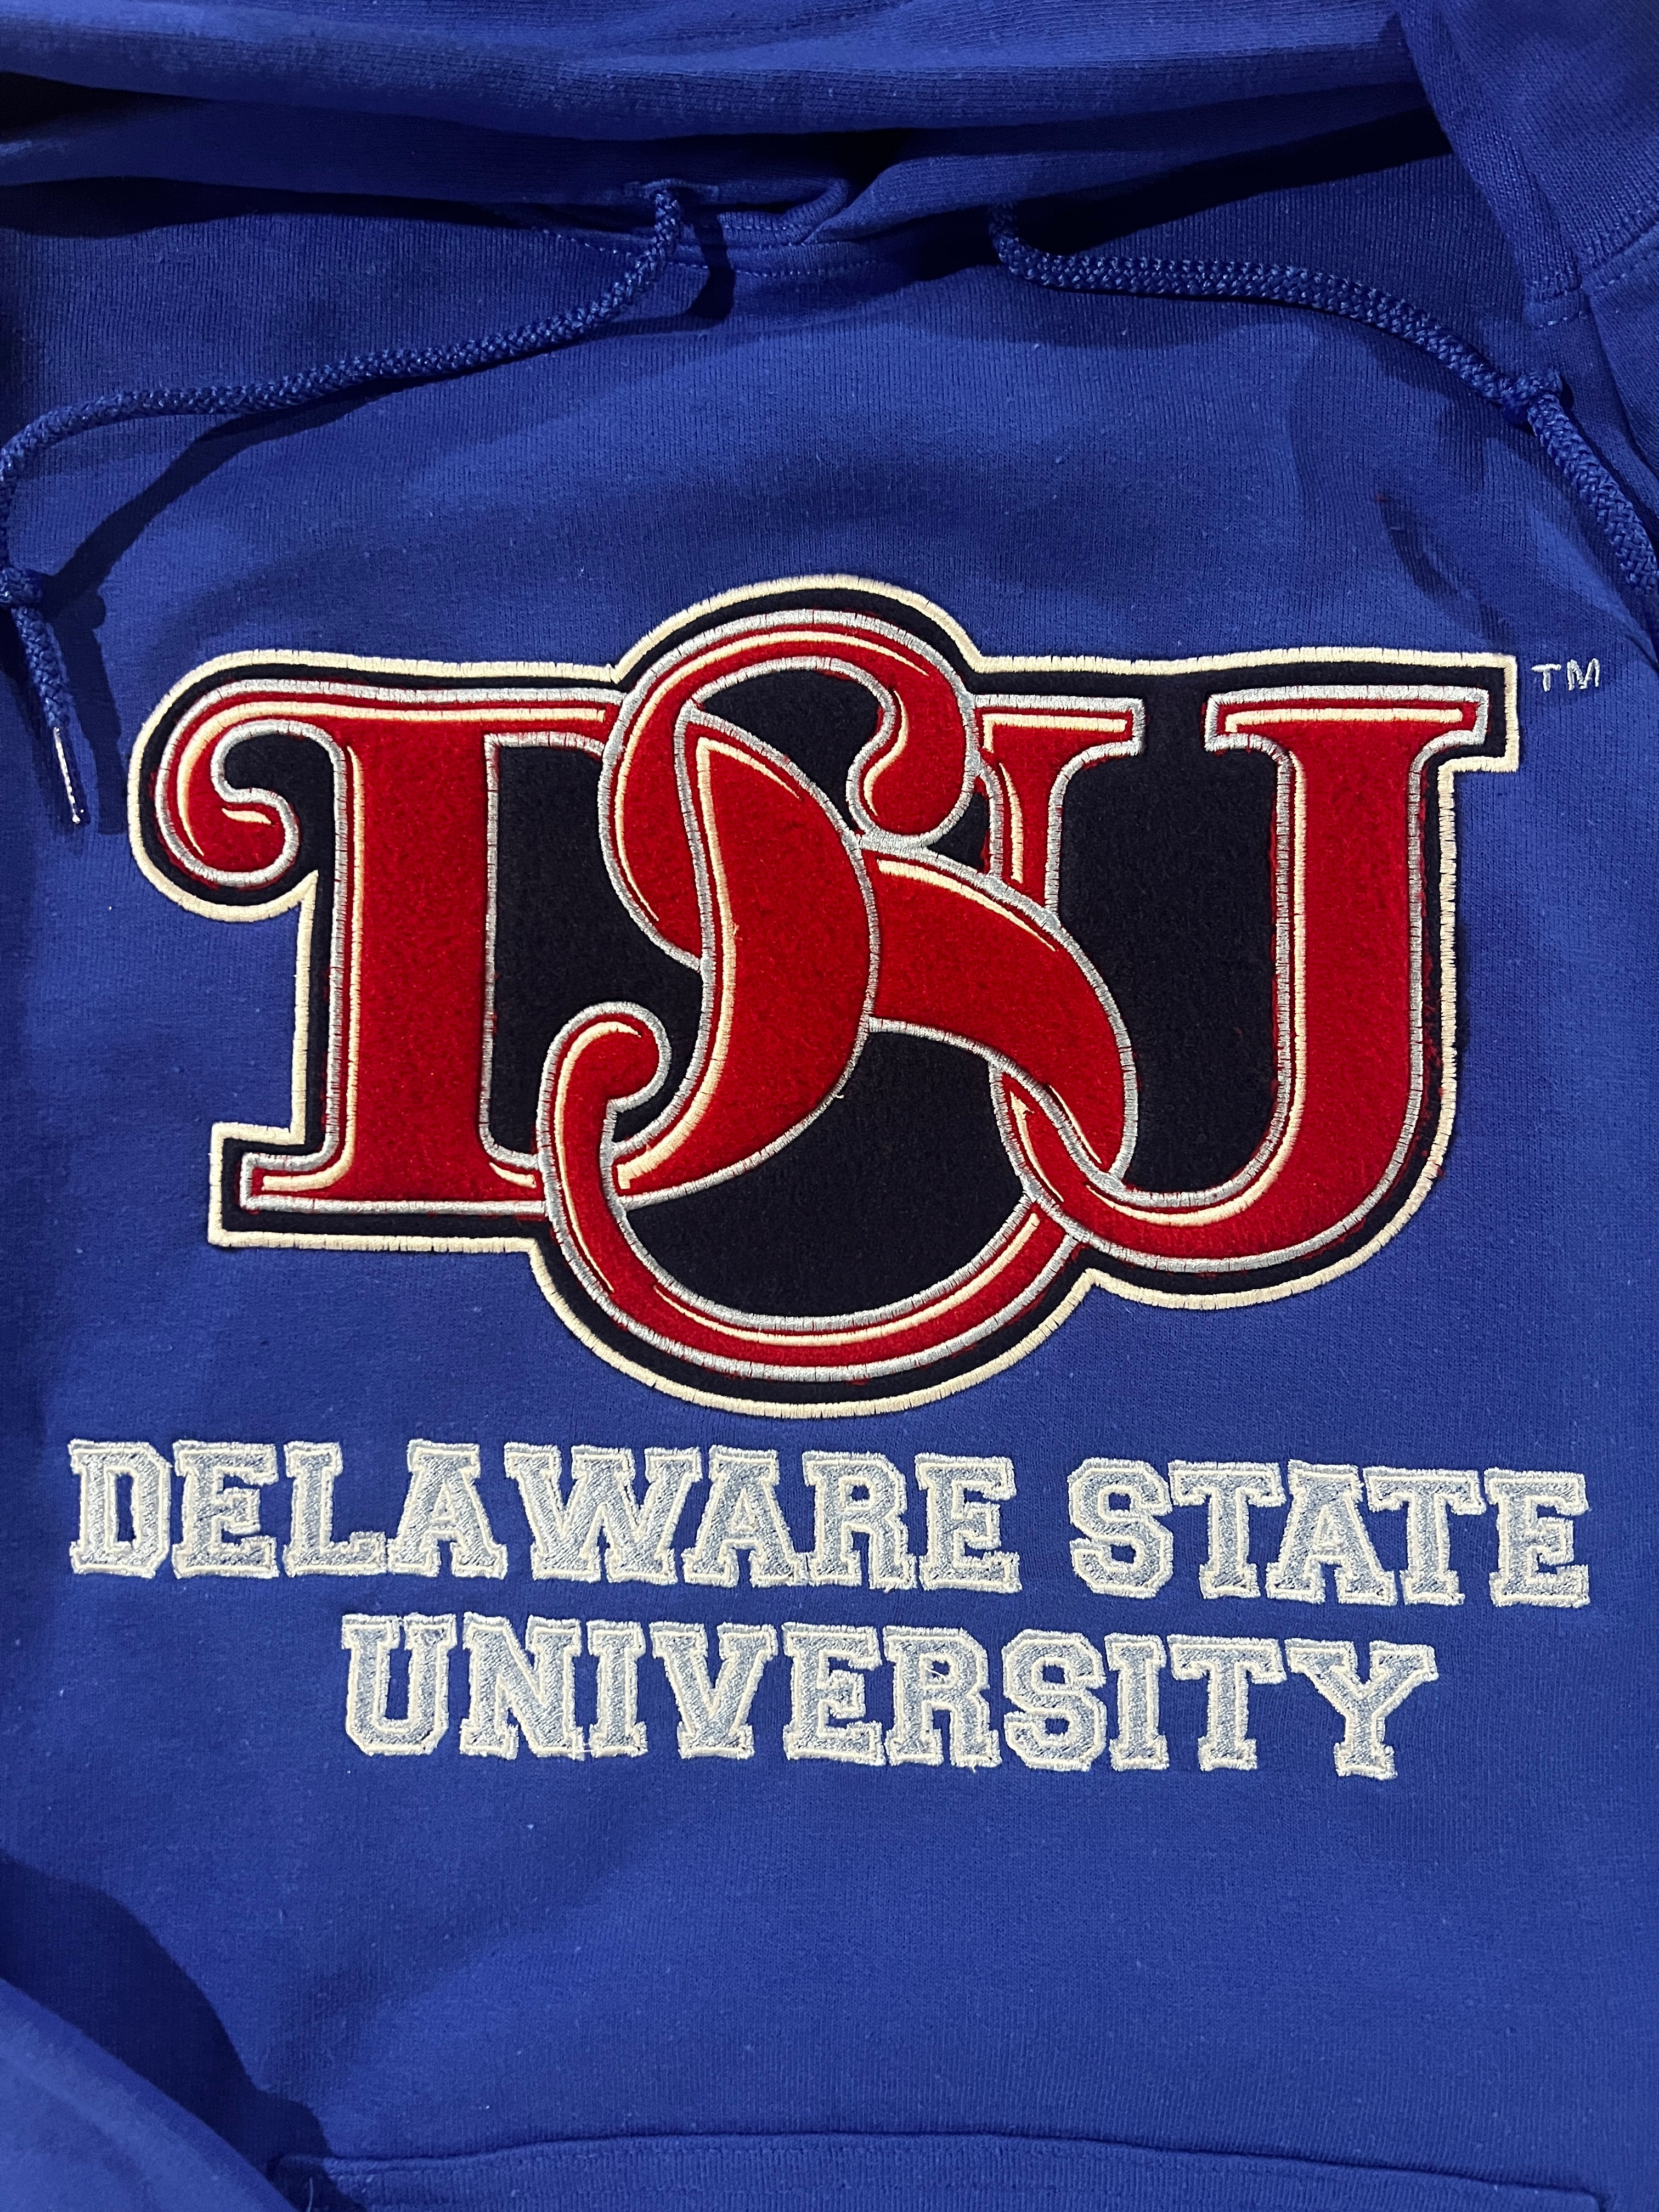 Delaware State University Hoodie